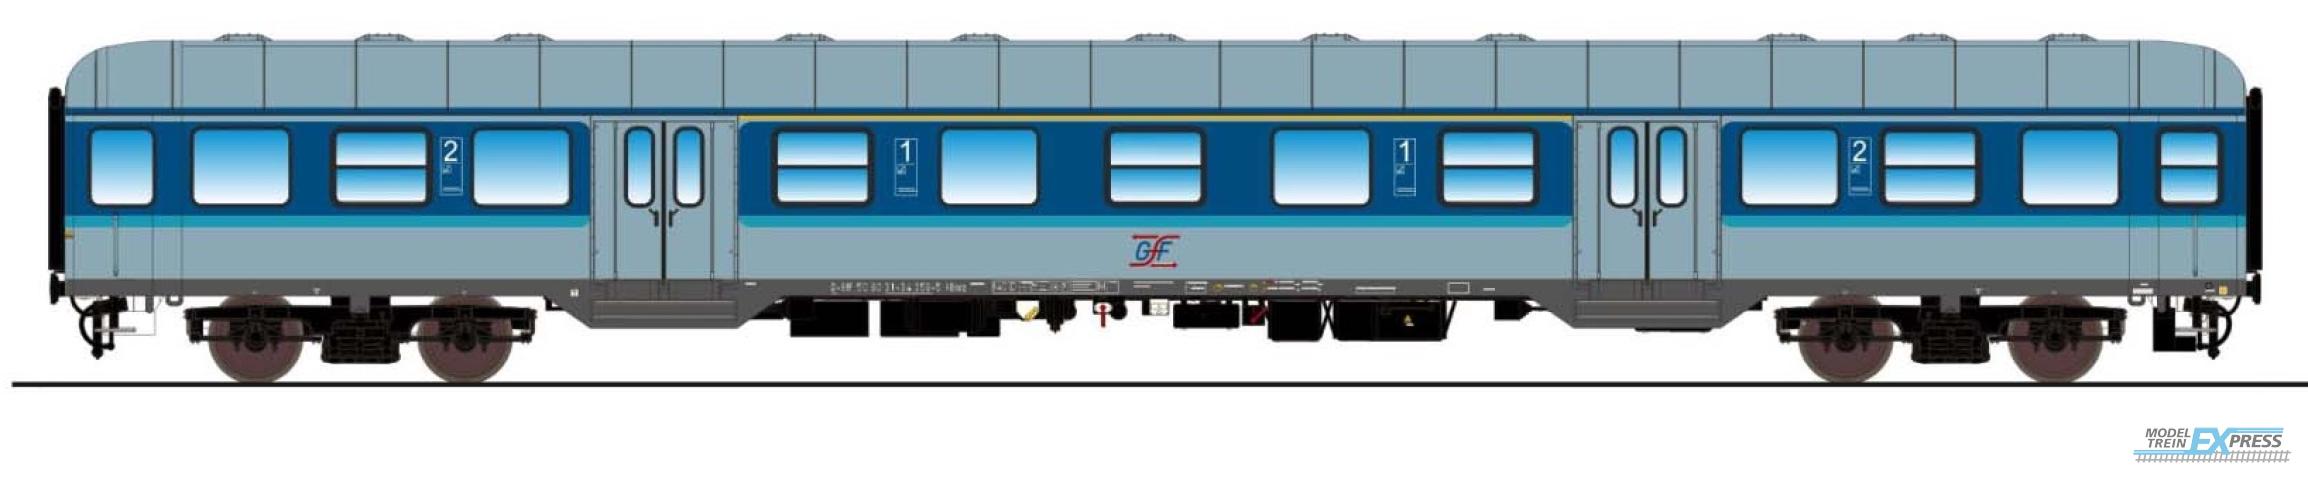 Esu 36069 n-Wagen, H0, AB nrz 418.4, 80 31-34 359-5, 1./2. Kl, GfF Ep. VI, blau-weiß, DC